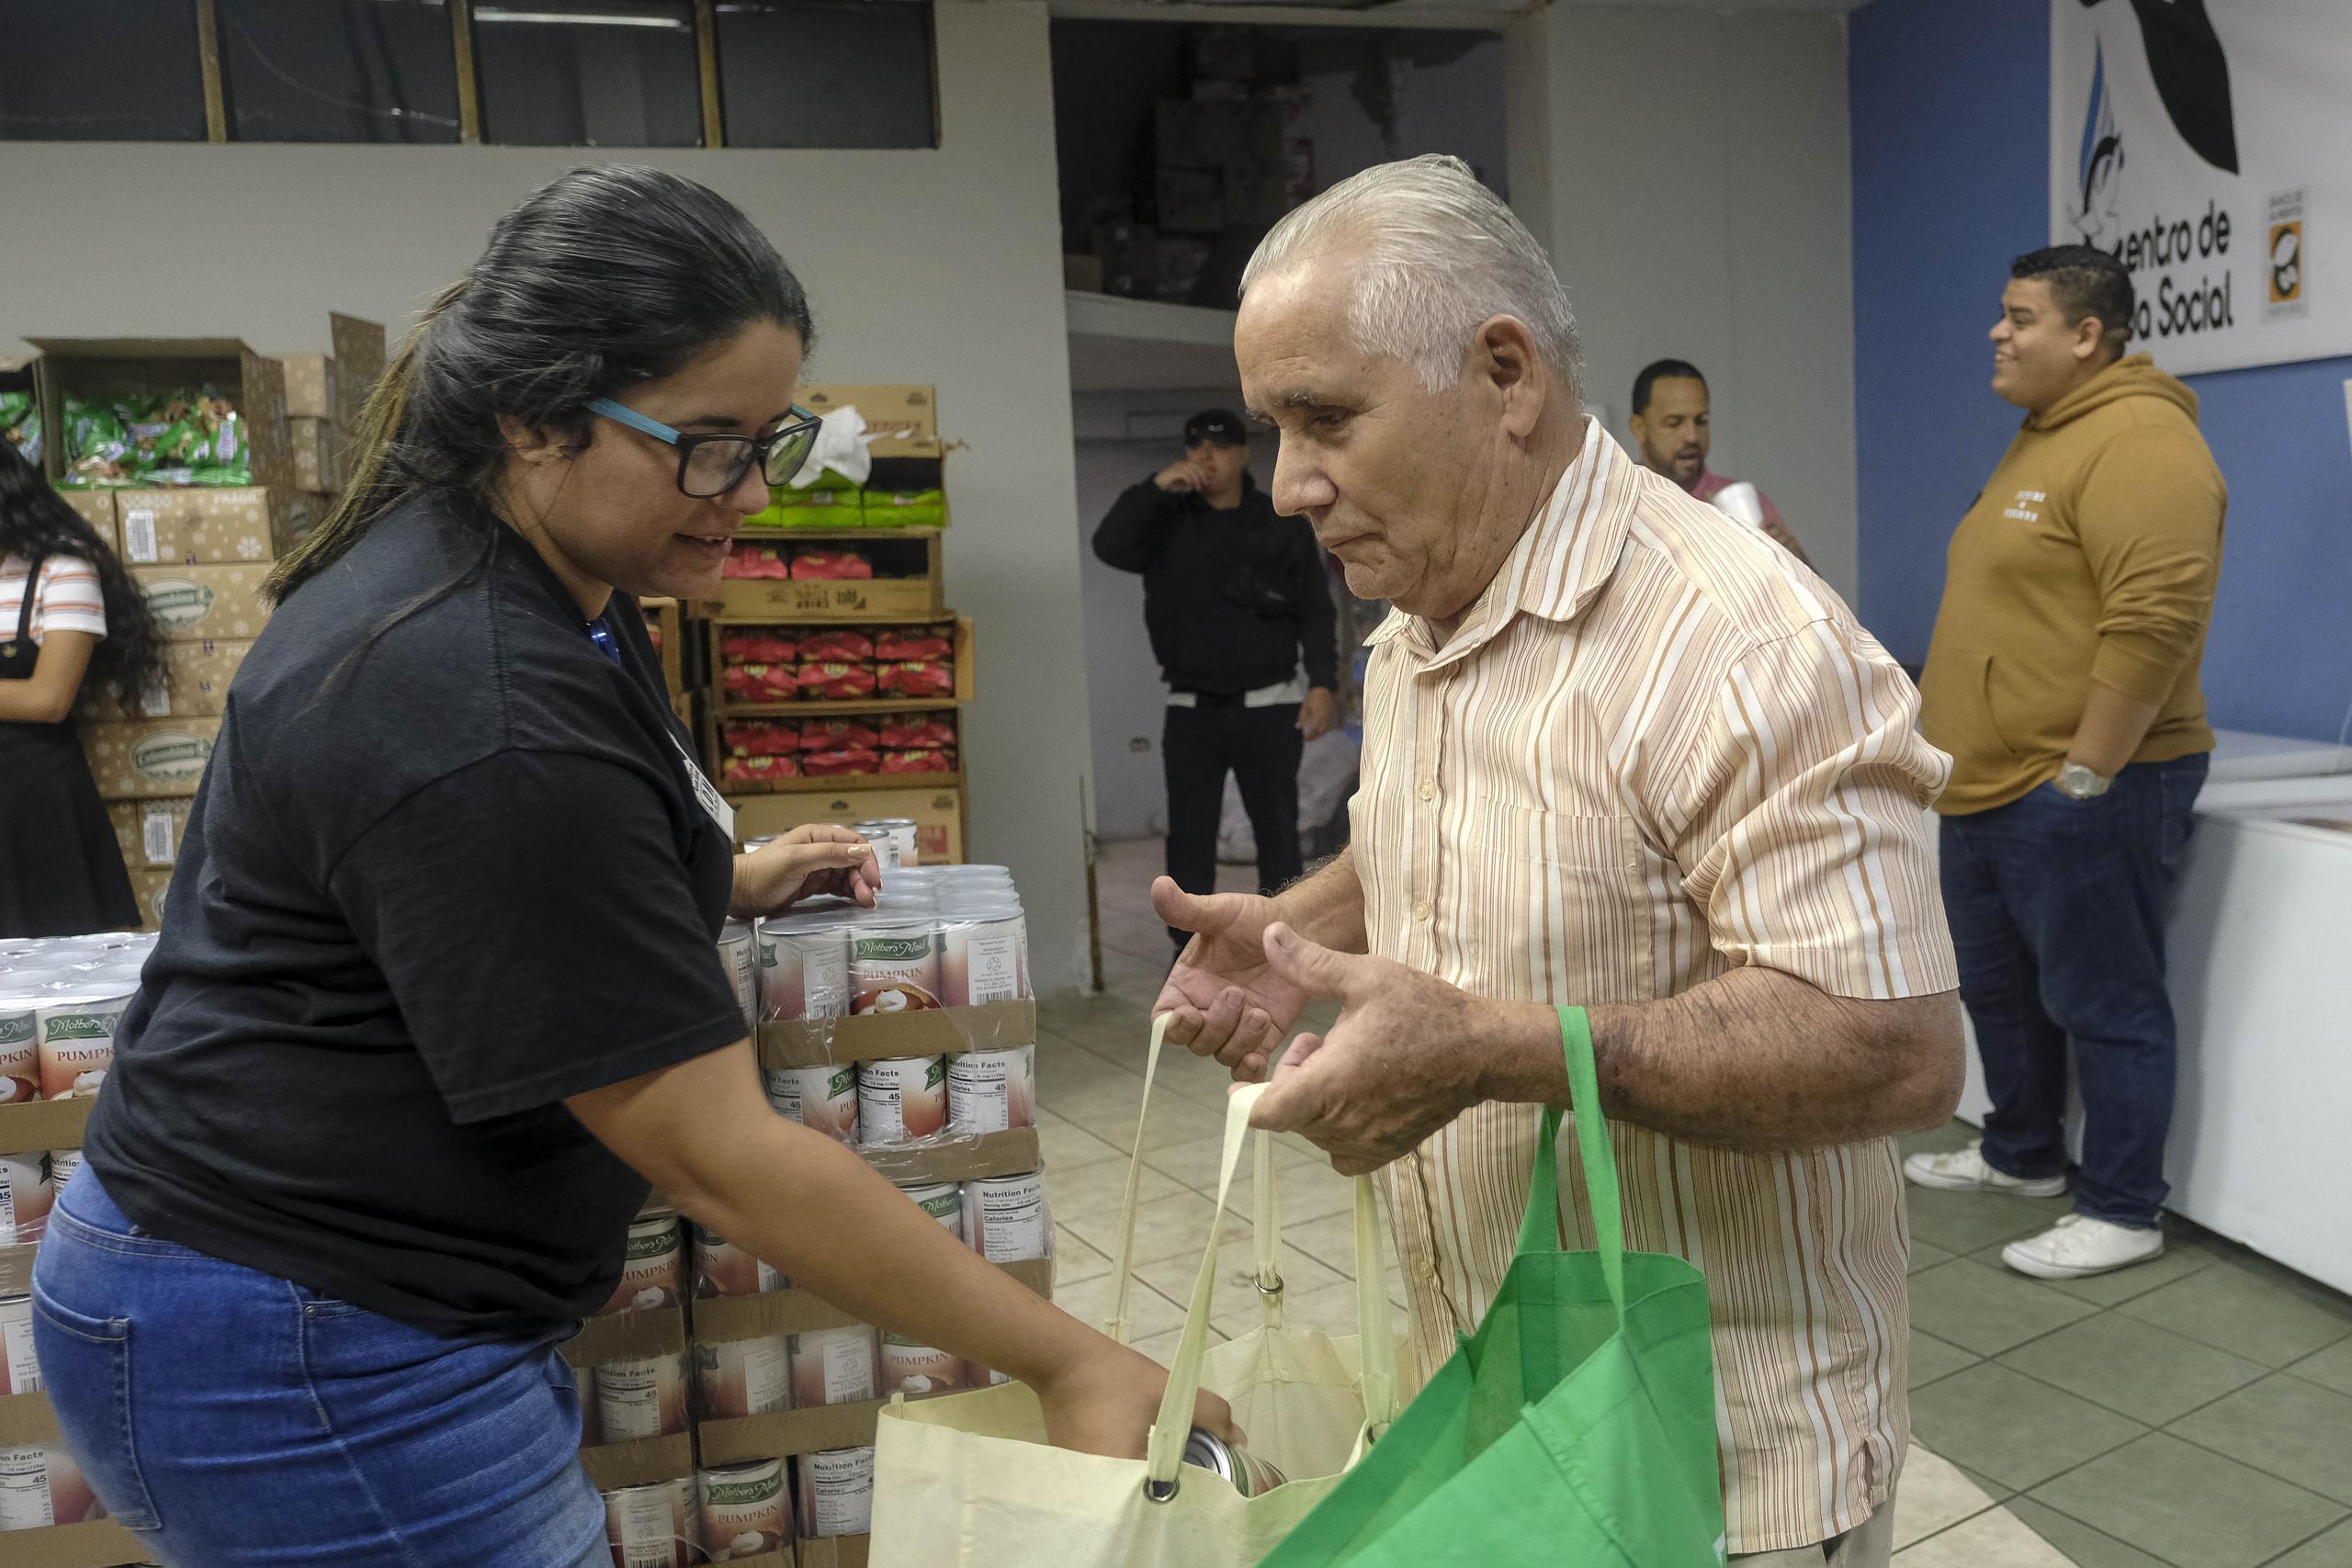 En la foto, Jeremías Rosa recibe alimentos en una especie de supermercado donde dan comida gratis a los que llegan a buscar la ayuda.